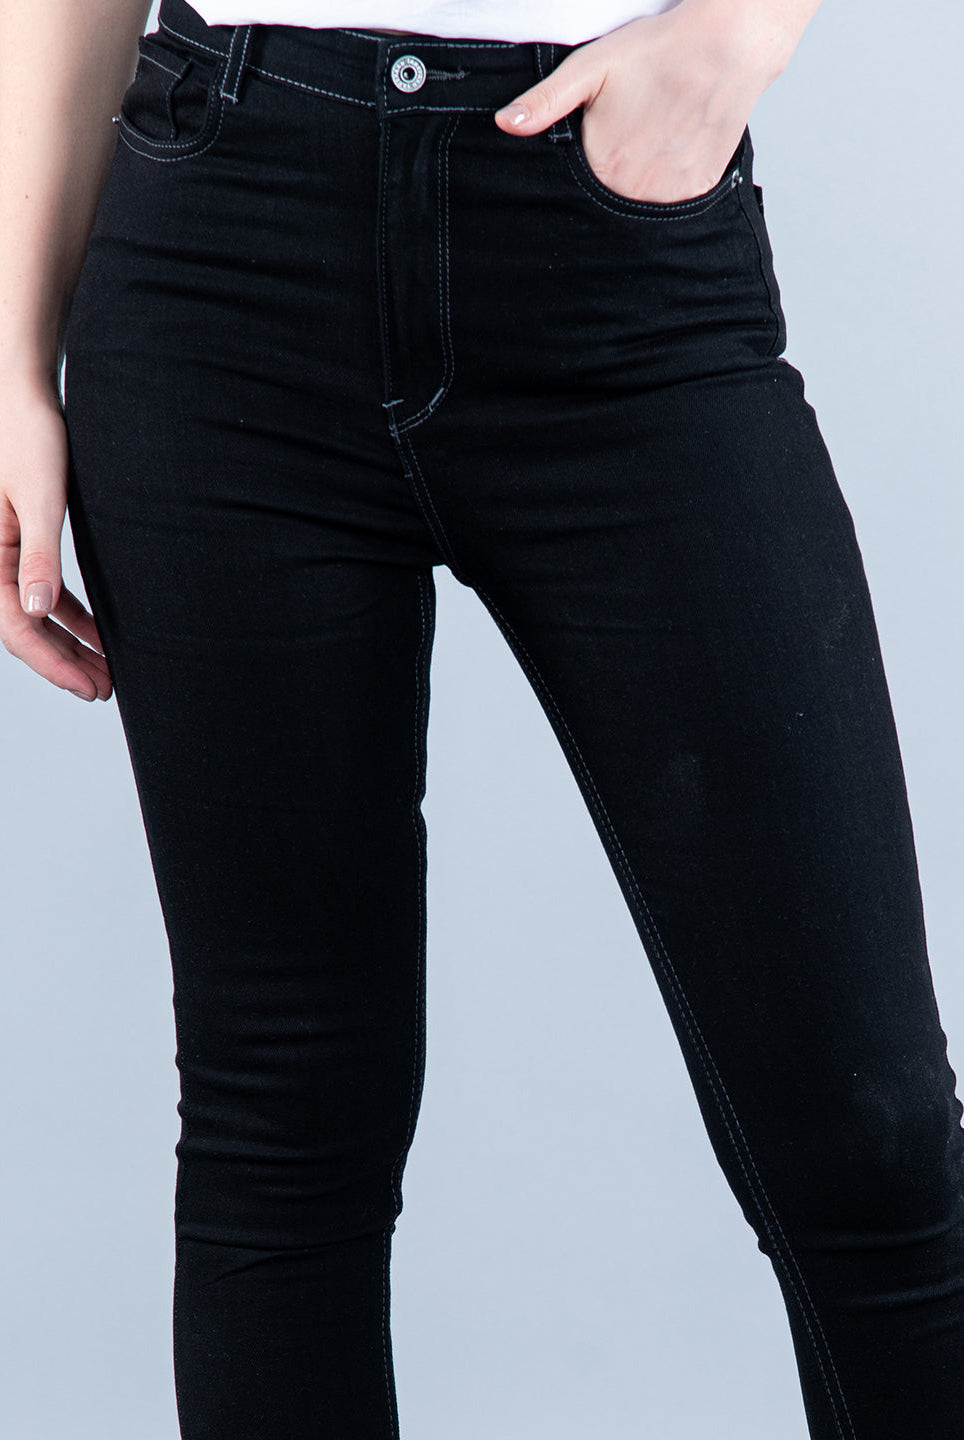 skinny jeans women black